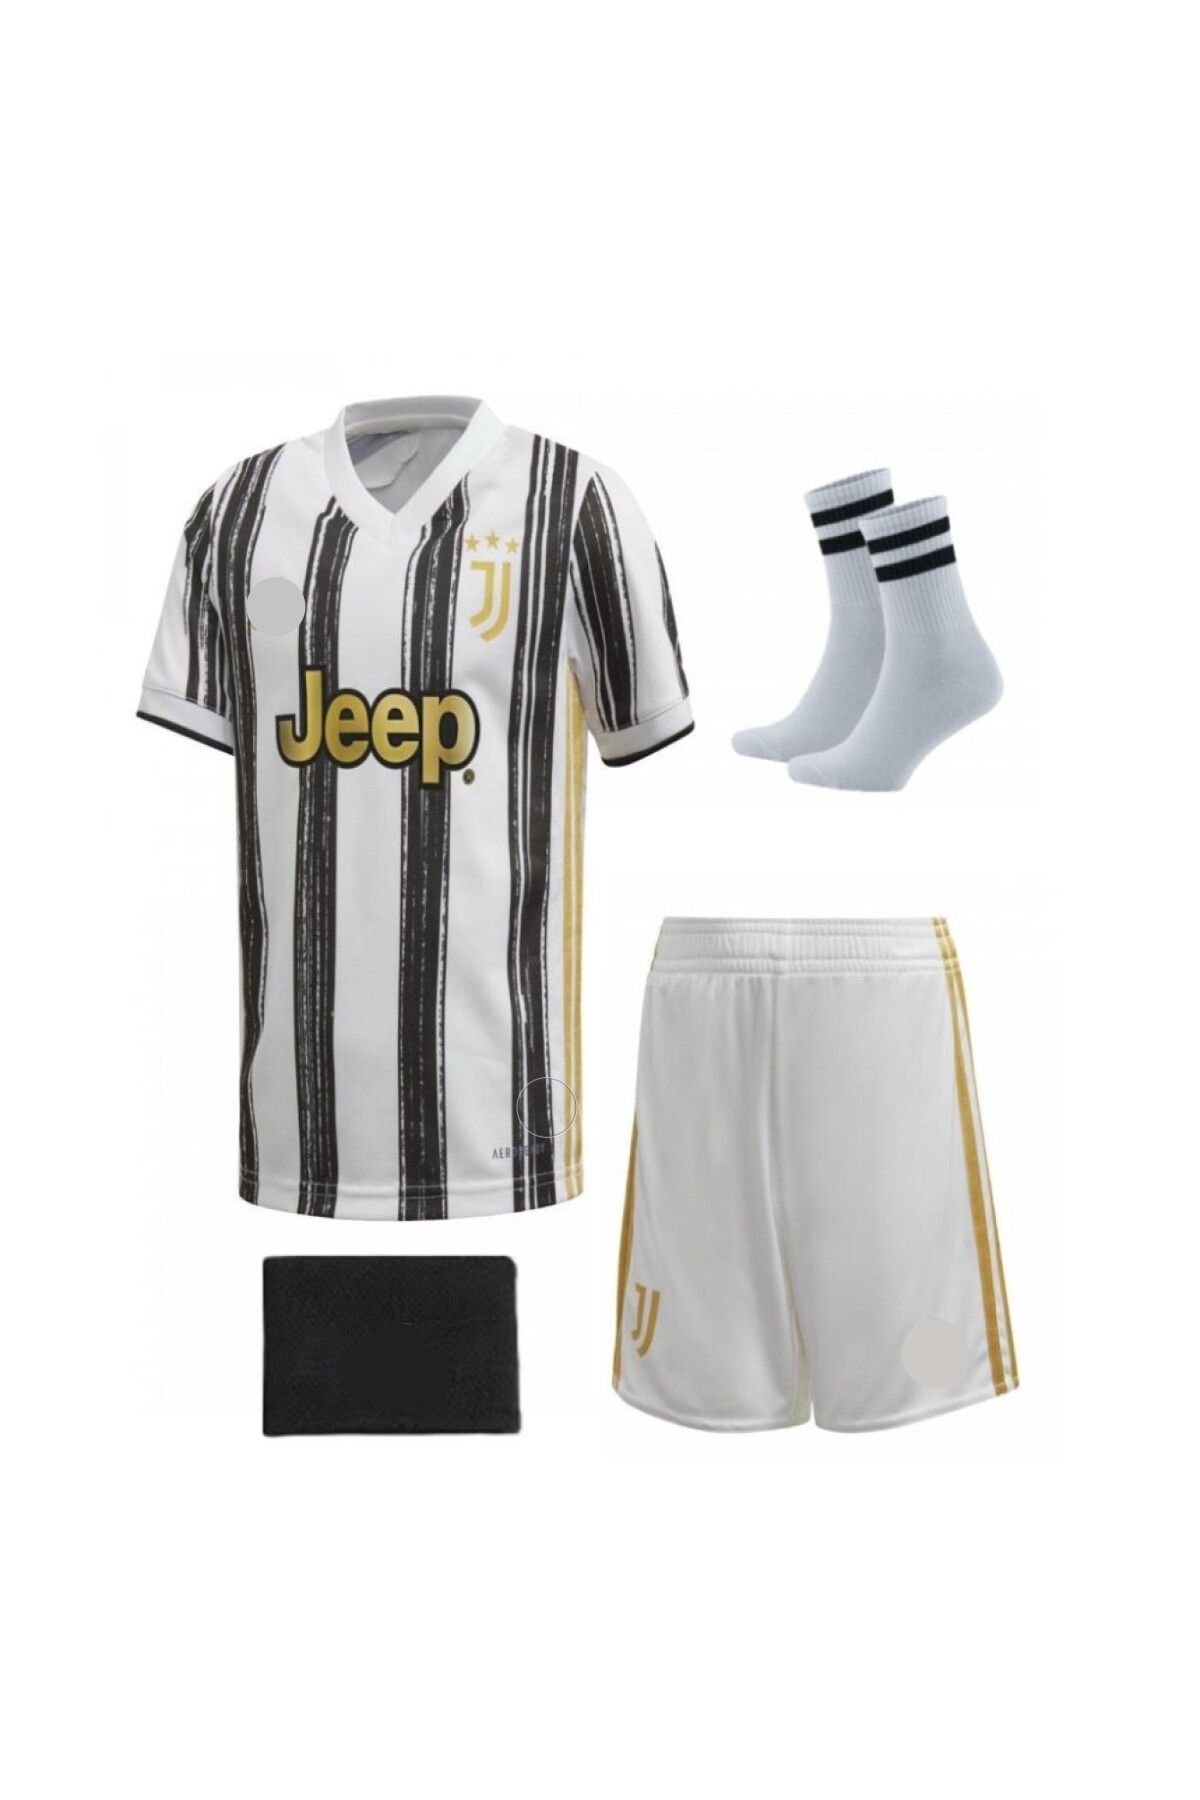 yenteks Juventus Ronaldo 21/22 Sezon Beyaz 4 Parça Çocuk Forma Takımı Forma Şort Çorap Bileklik